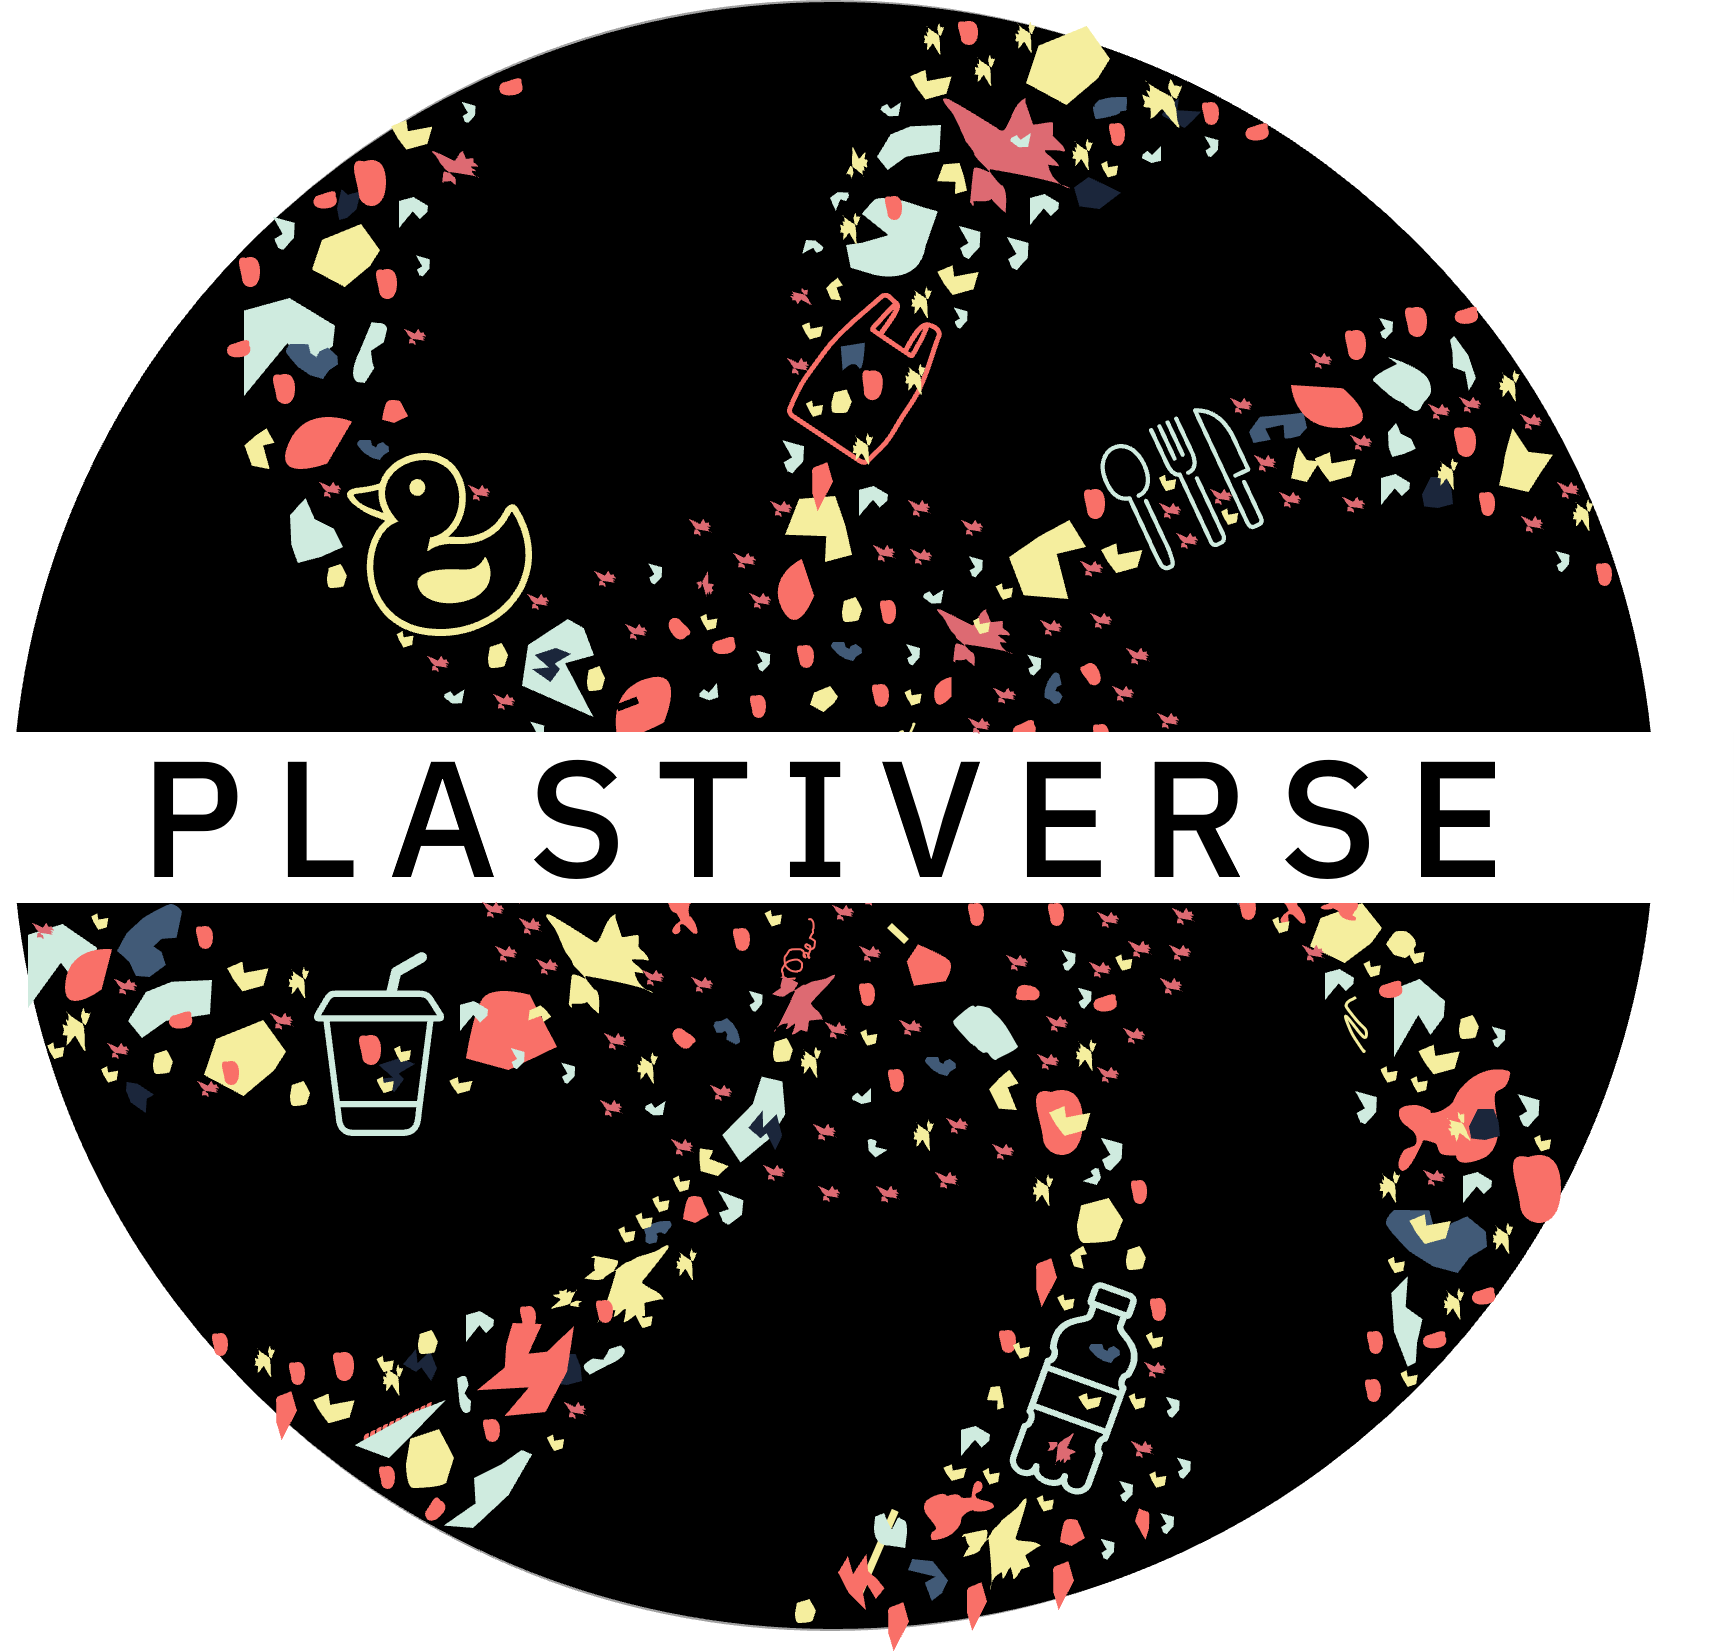 Plastiverse